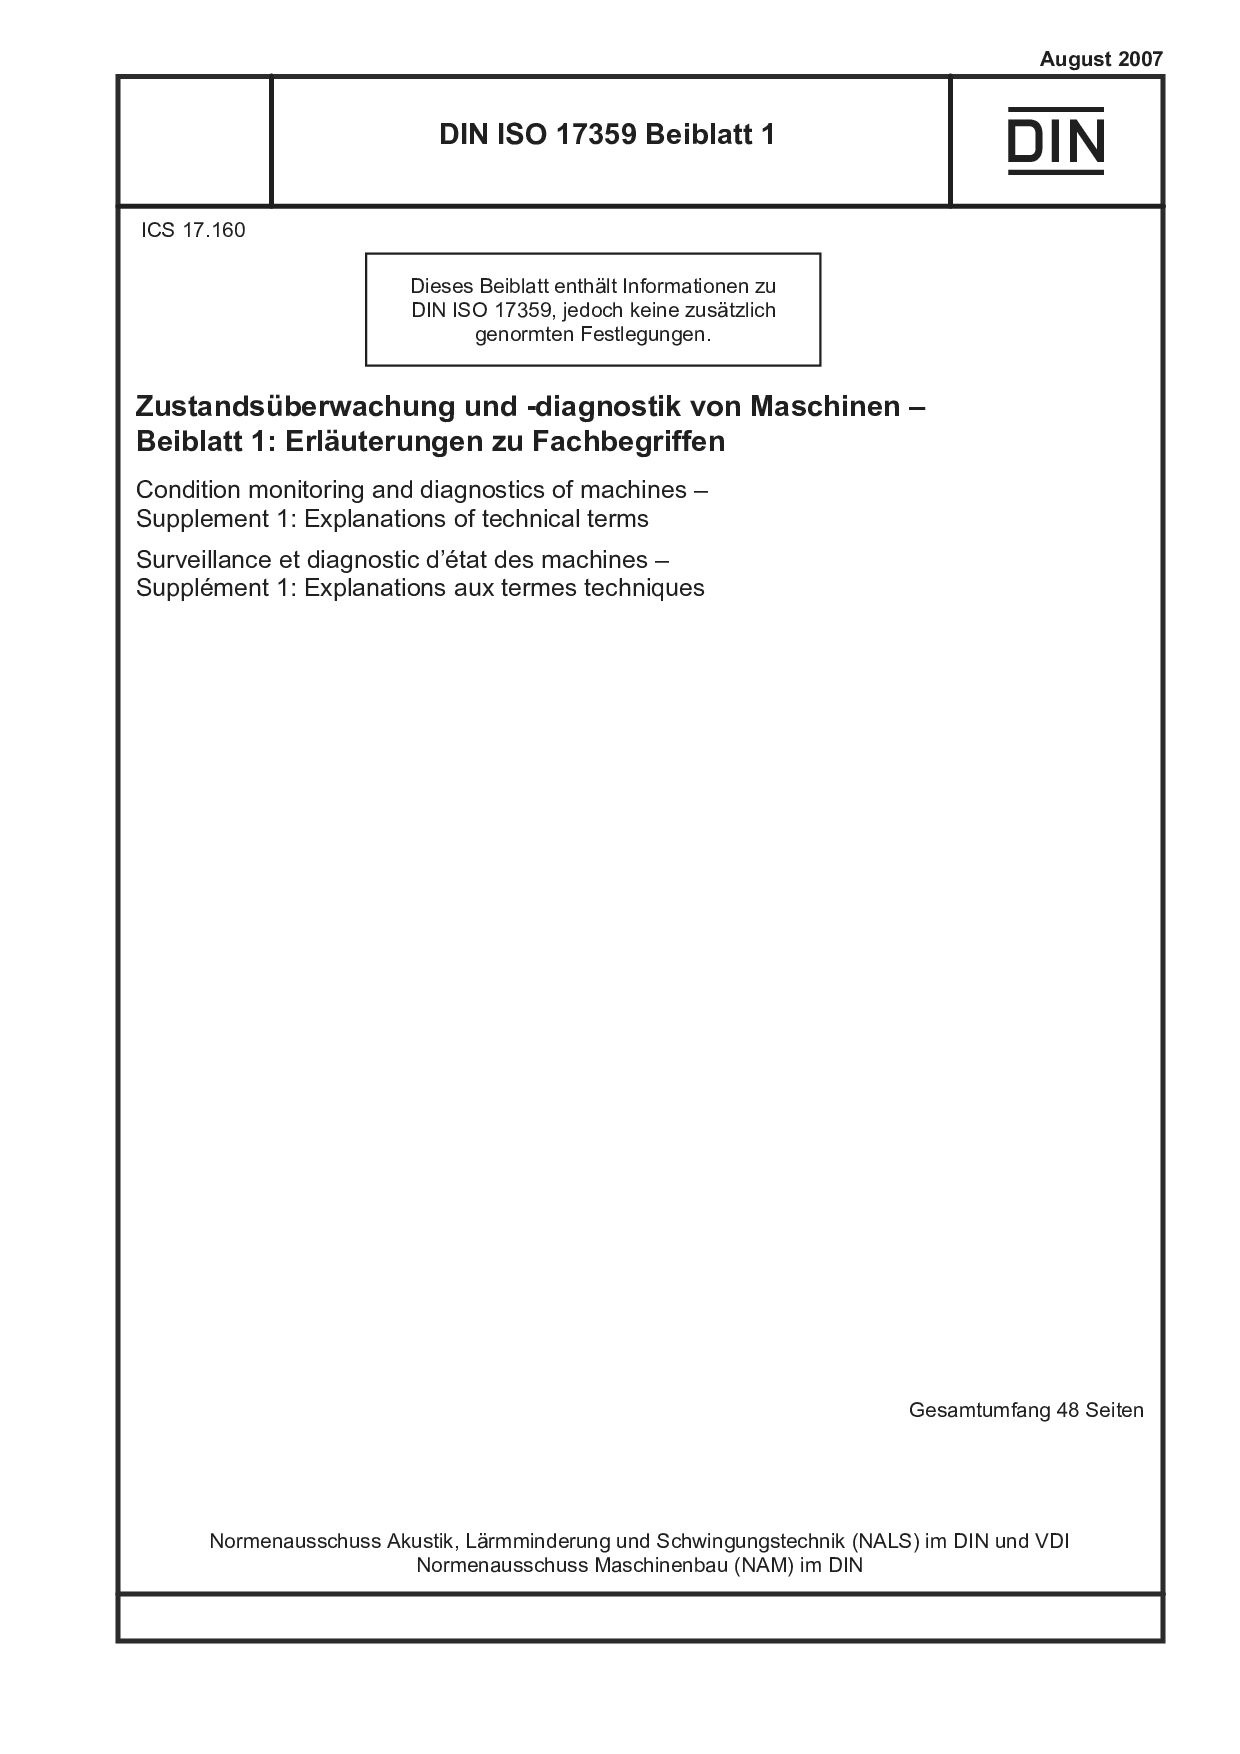 DIN ISO 17359 Beiblatt 1:2007-08封面图